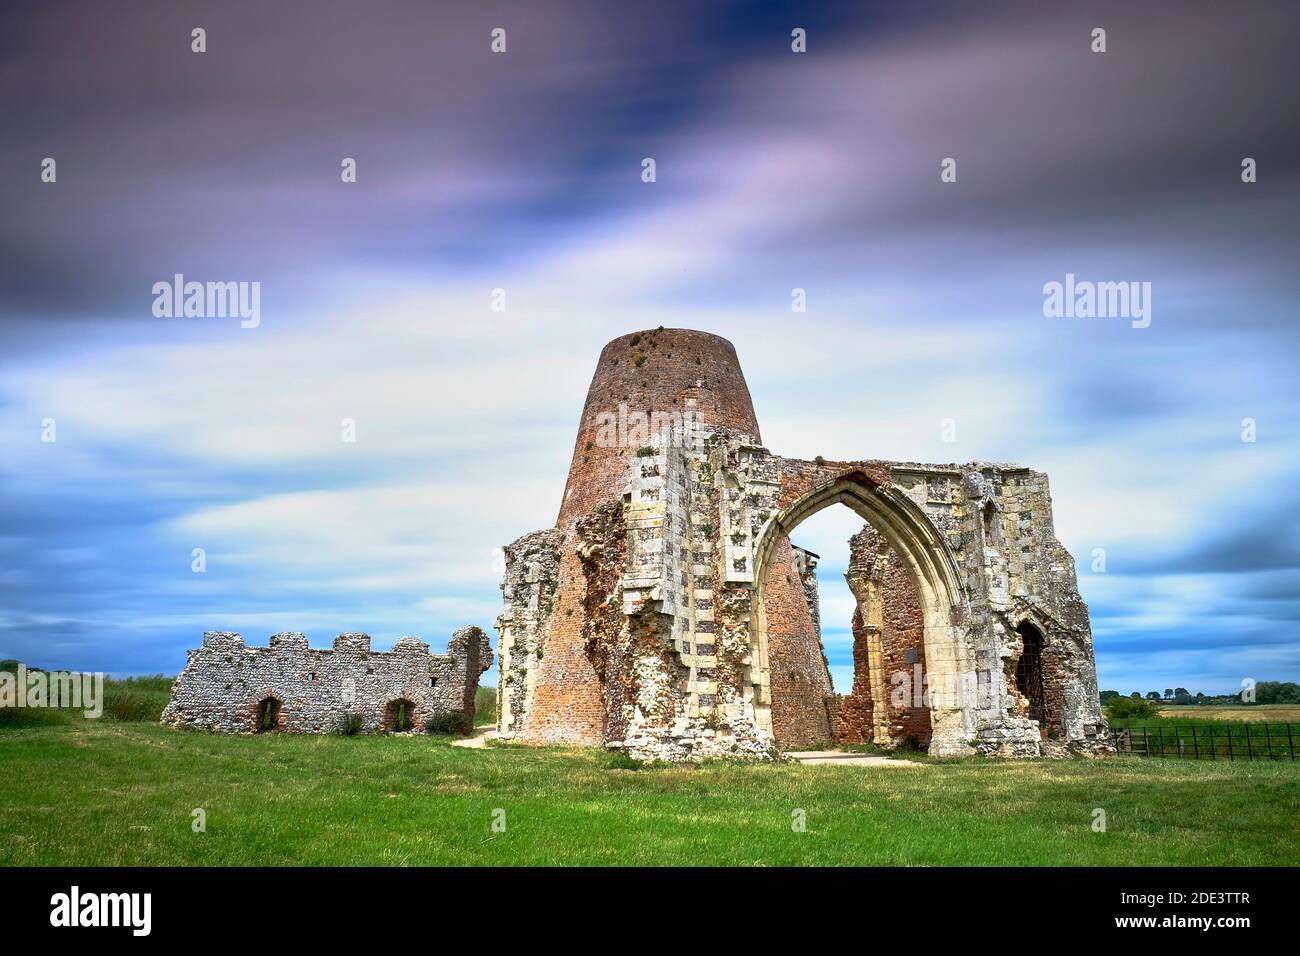 St. Benet's Abbey Ruin, Norfolk Broads, England Stockfoto